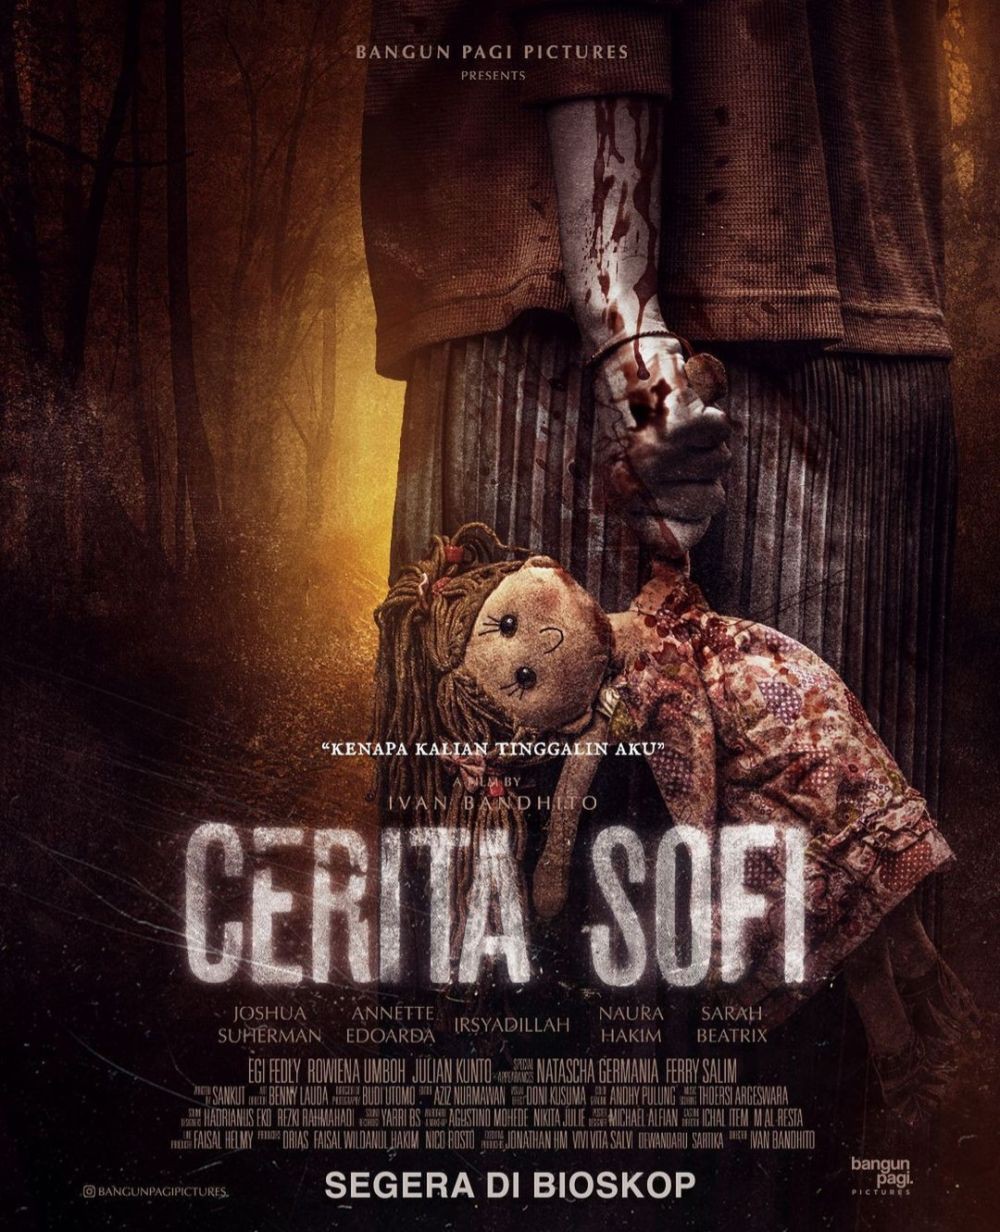 5 Film Horor Terbaru di Bioskop, Angkat Mitos dan Budaya Indonesia